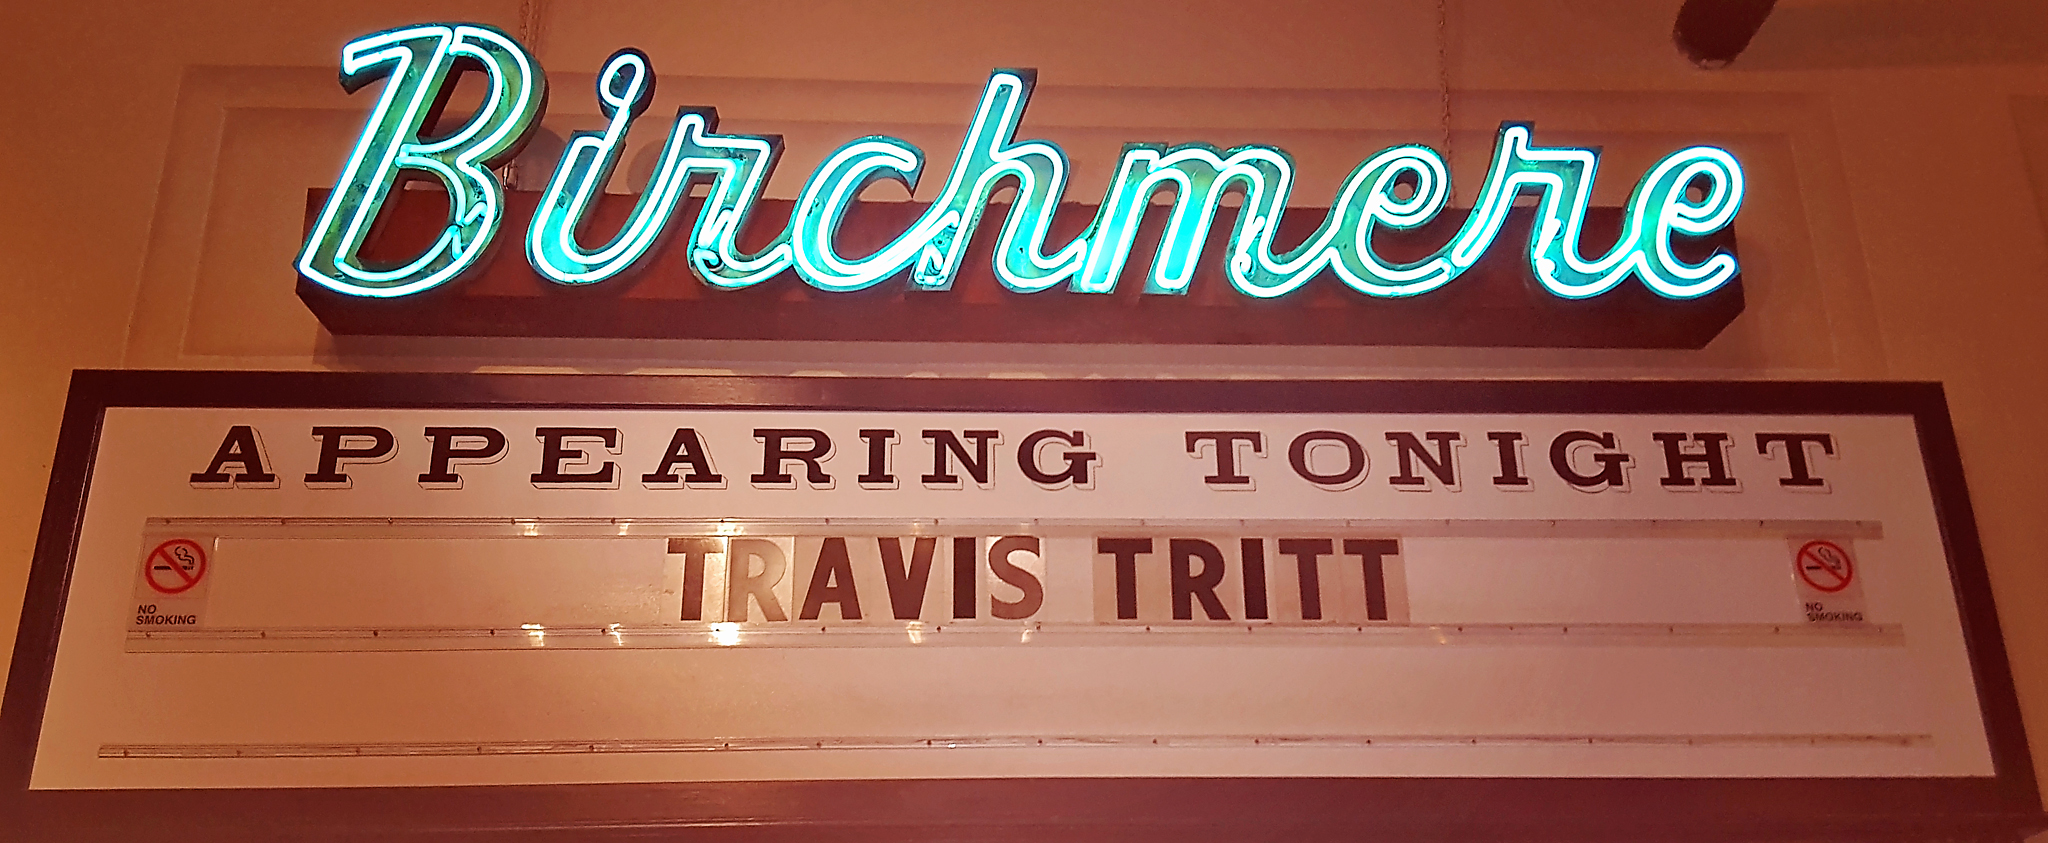 Travis Tritt Live @ The Birchmere 1/12/2016